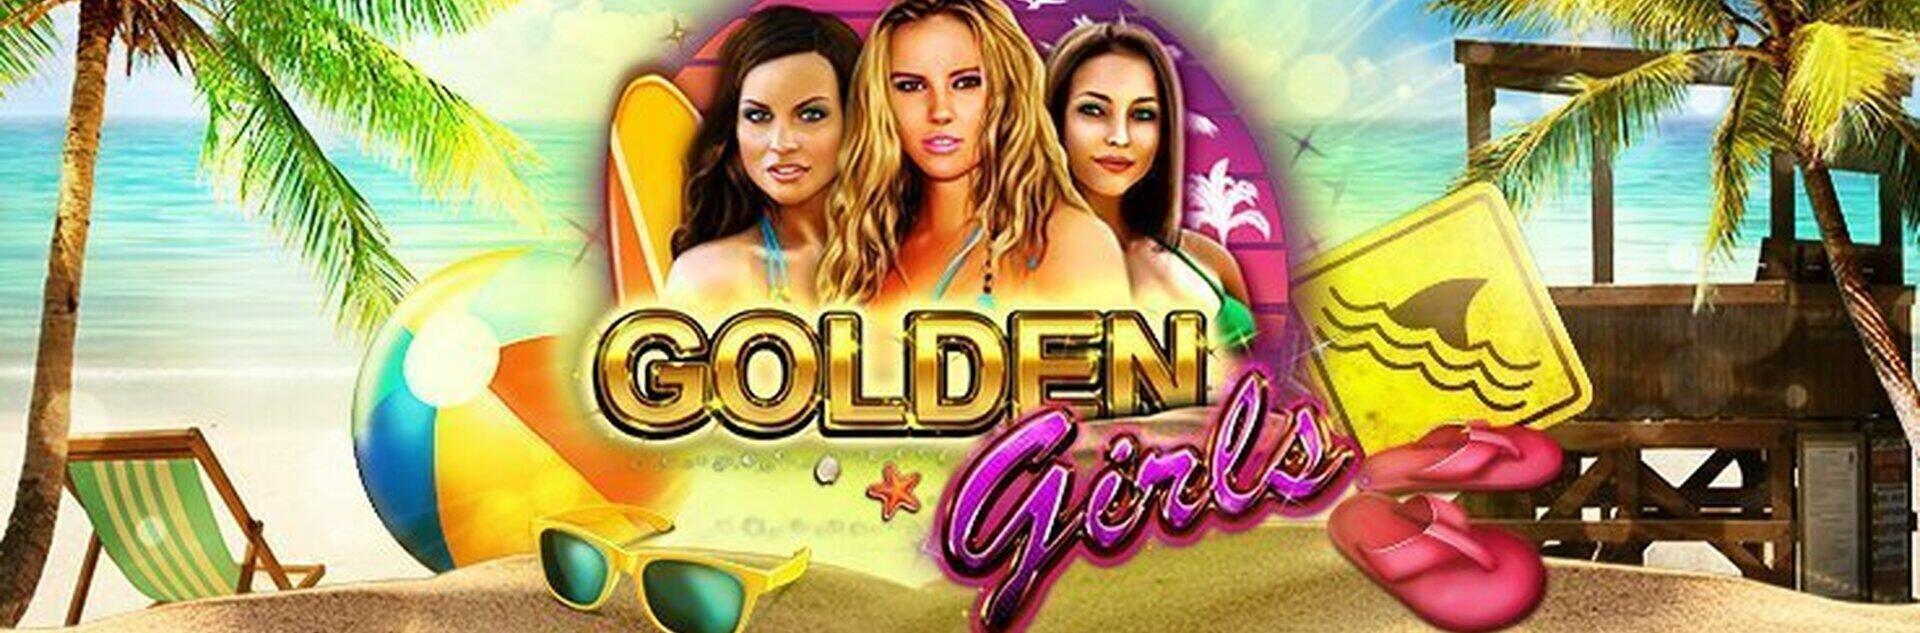 Golden Girls Slot